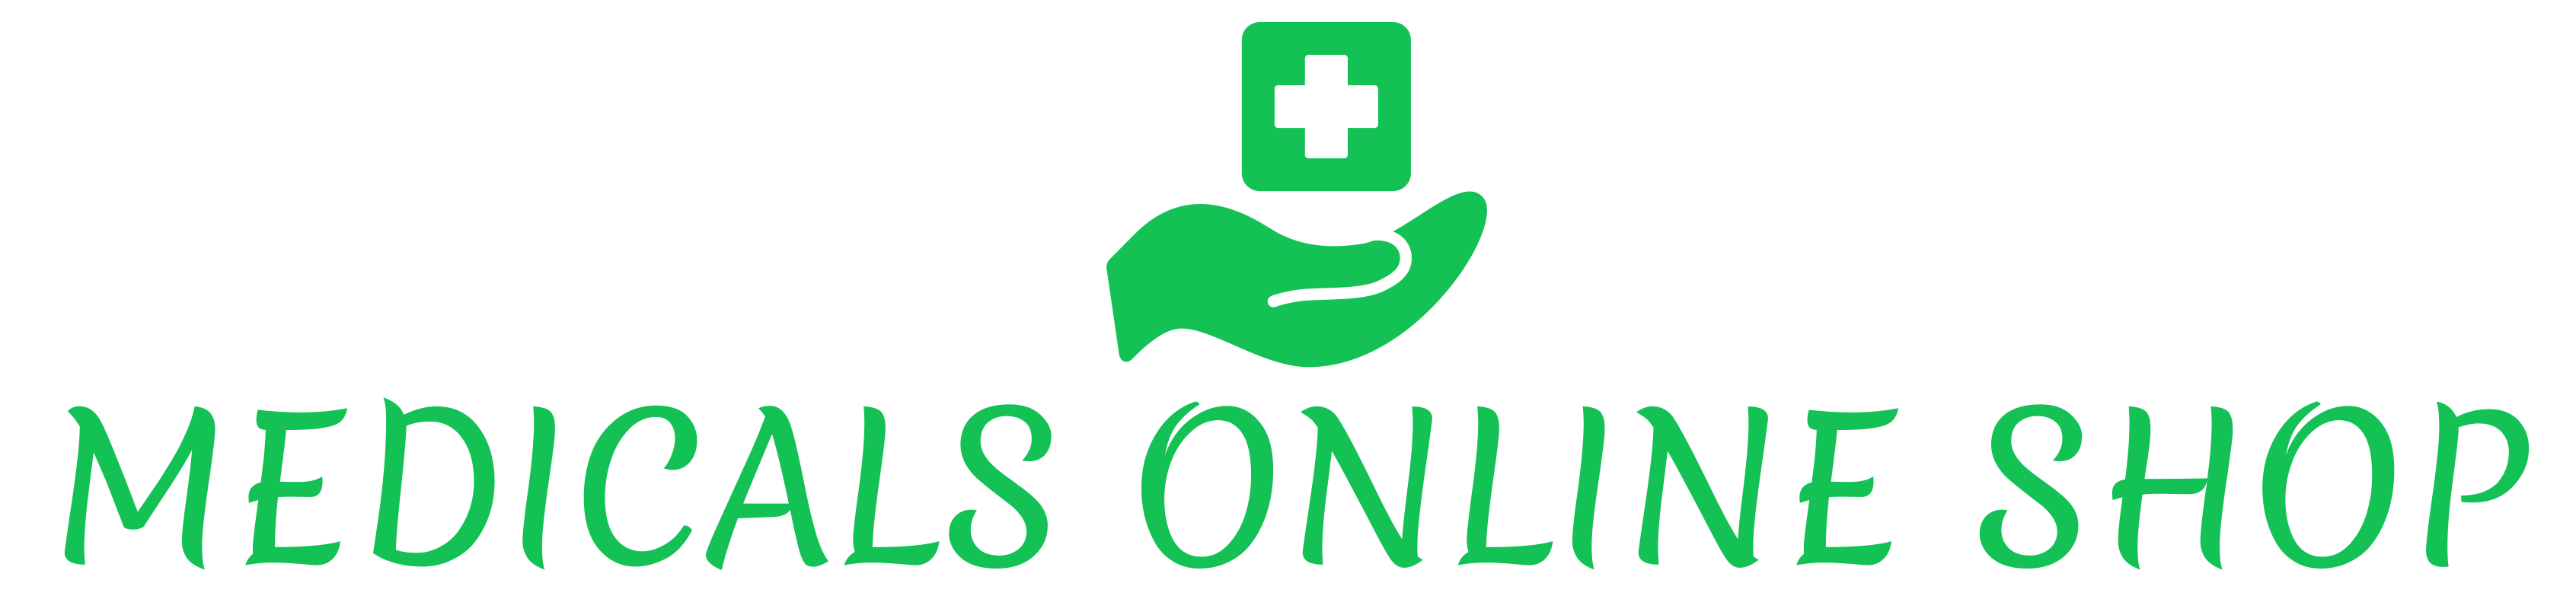 Medicals Online Shop